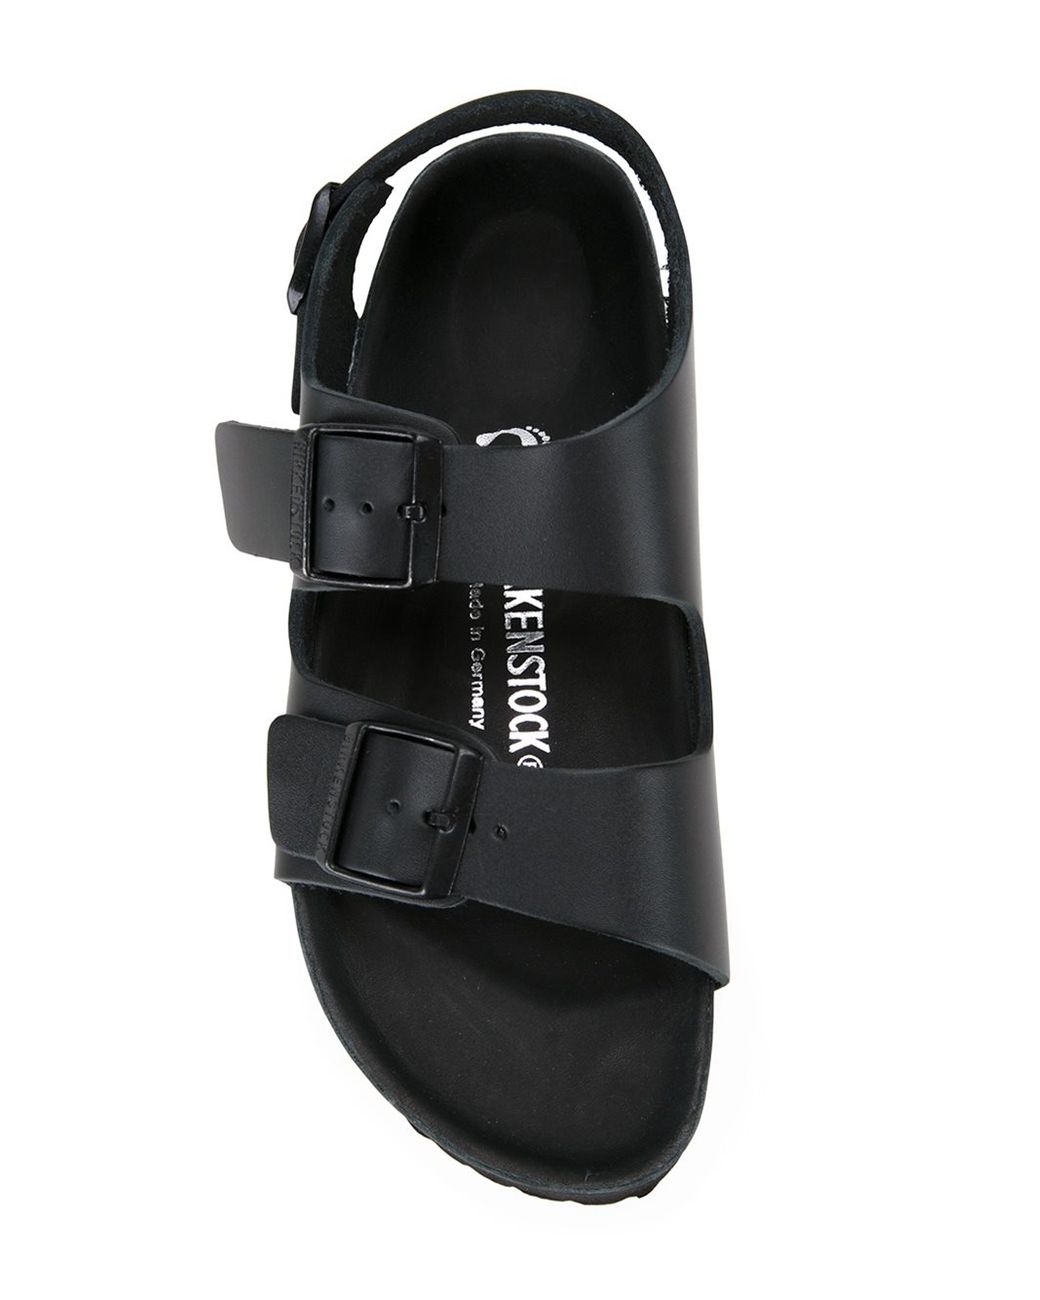 Birkenstock 'milano Exquisite' Sandals in Black | Lyst